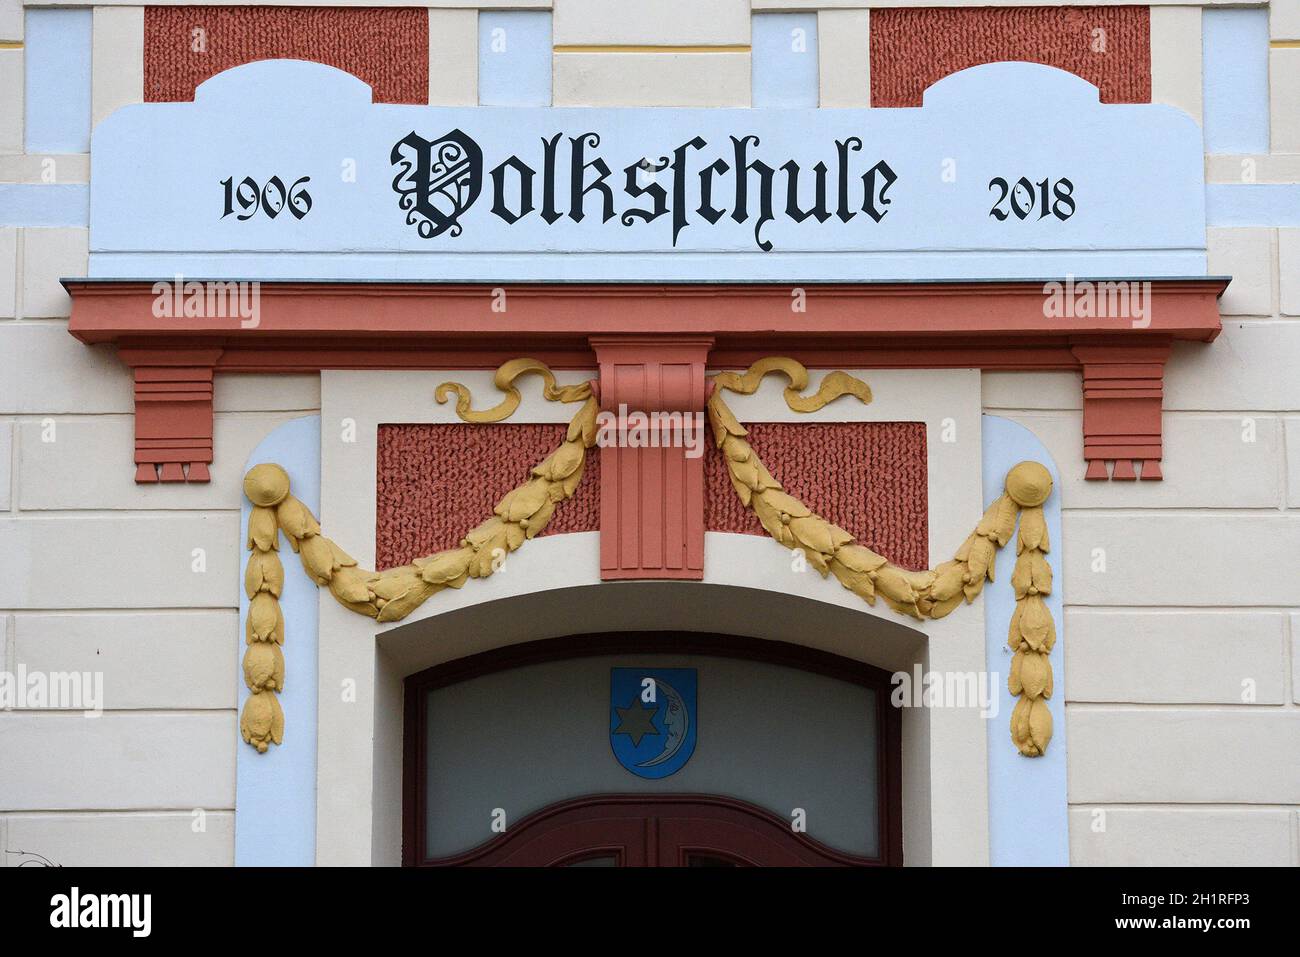 Fassade der Volksschule von Mattighofen , Österreich, Europa - Facade of the elementary school of Mattighofen, Austria, Europe Stock Photo